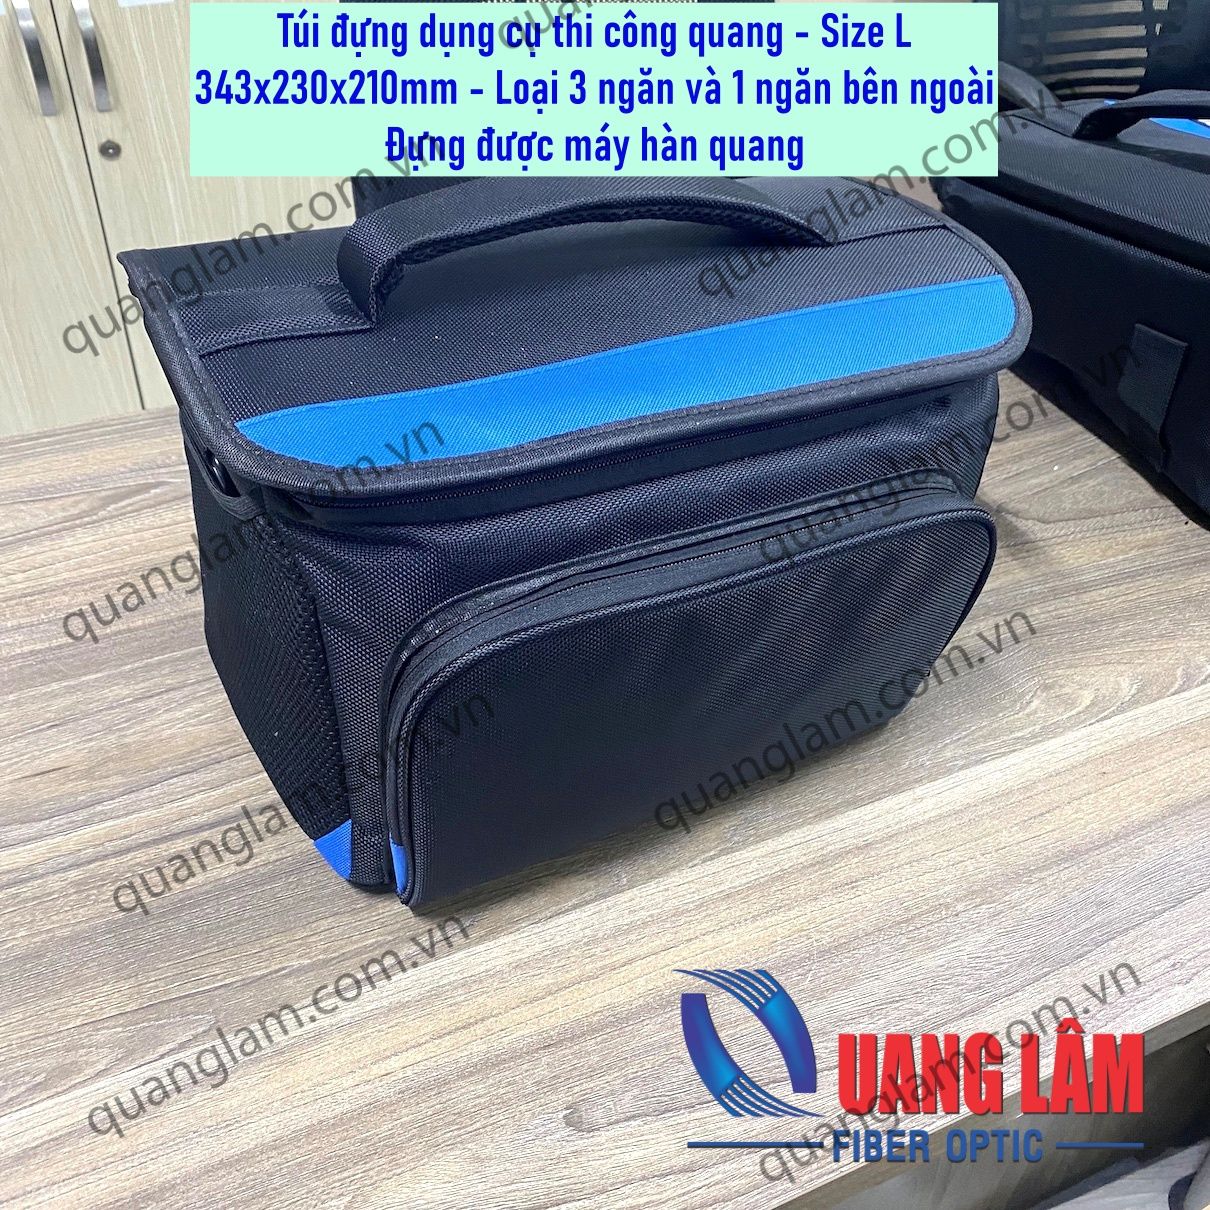 Túi đựng dụng cụ - Size L (343*230*210mm) 3 ngăn và 1 ngăn ngoài, chống thấm nước, đựng được máy hàn quang